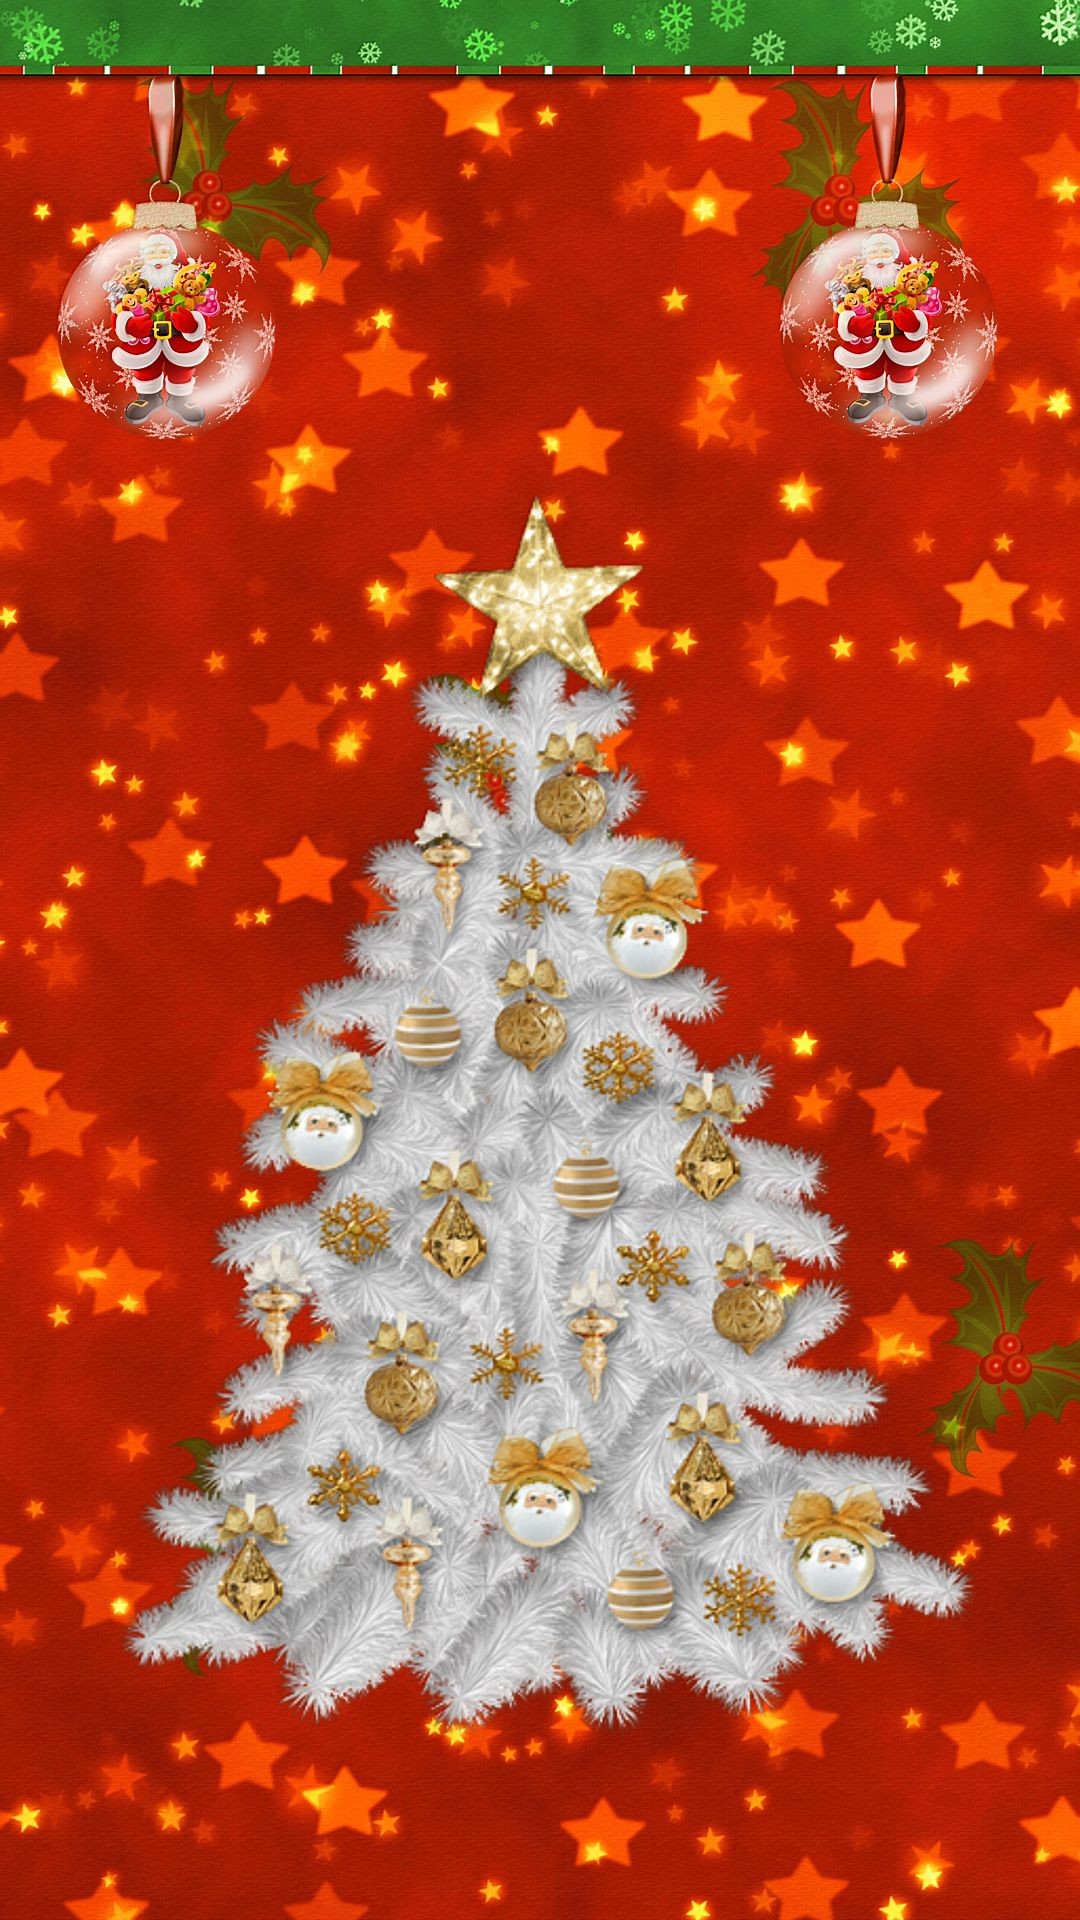 1080x1920 Christmas Time (Wallpapers) | â£ ReeseyBelle â£